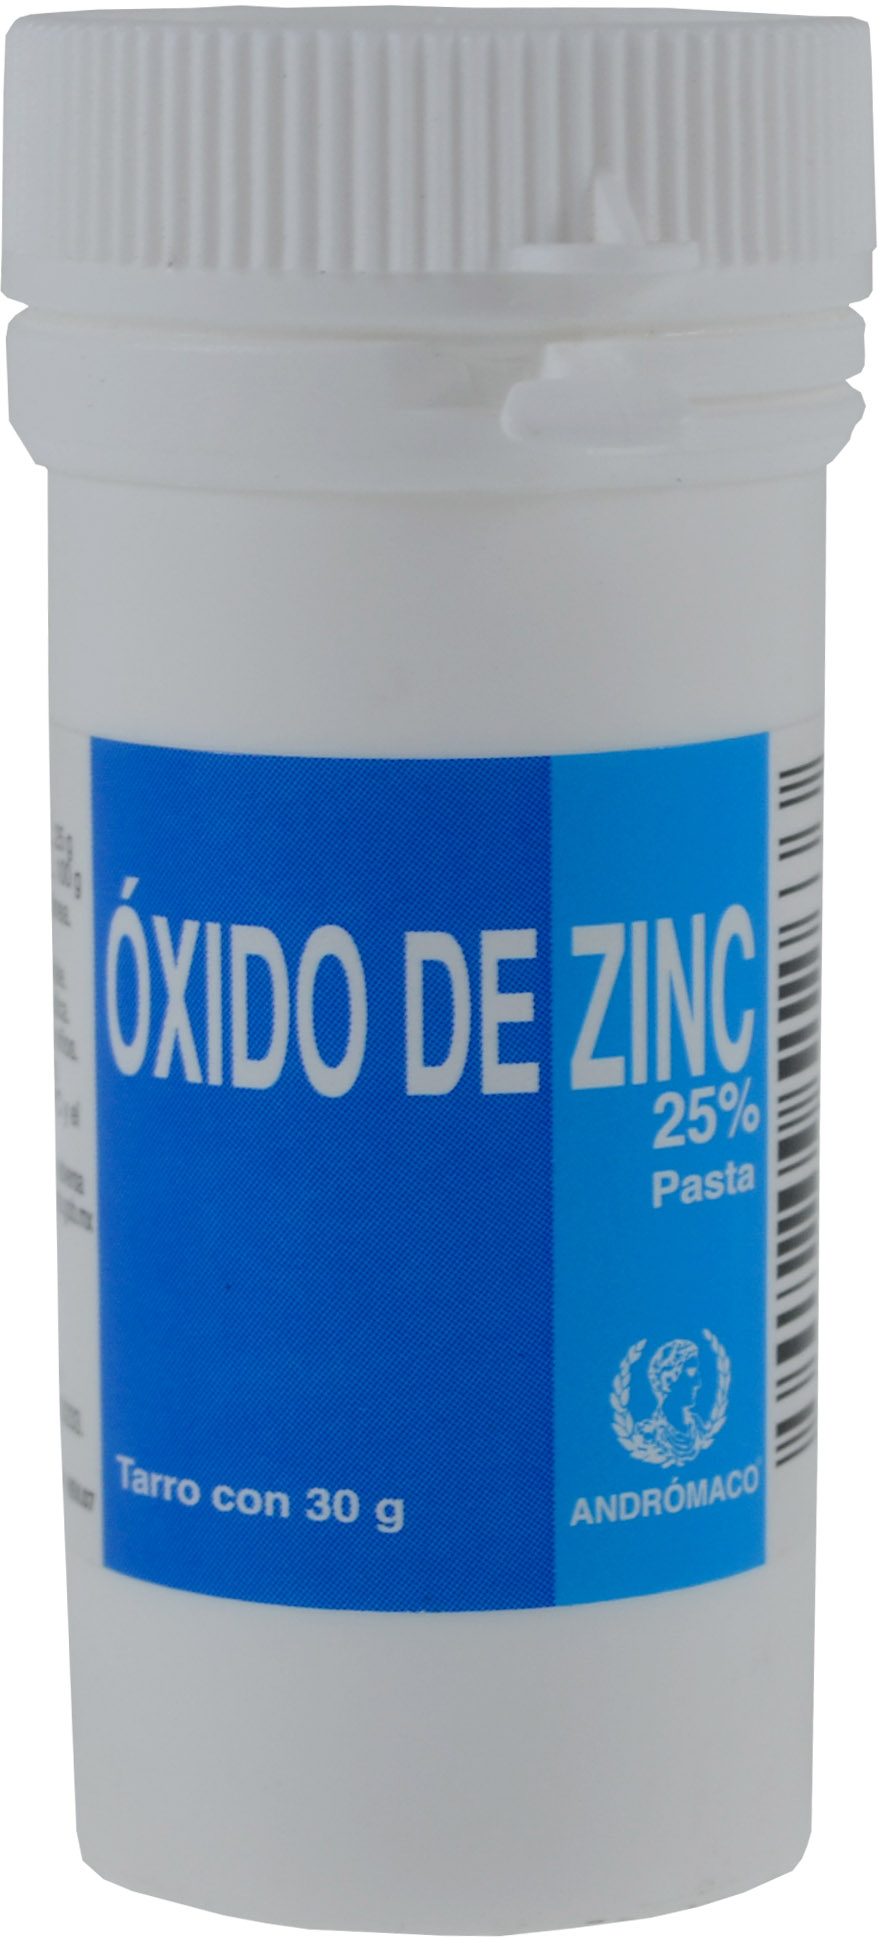 Oxido De Zinc tarro polvo 30g - Farmacias PuntoMX Queretaro